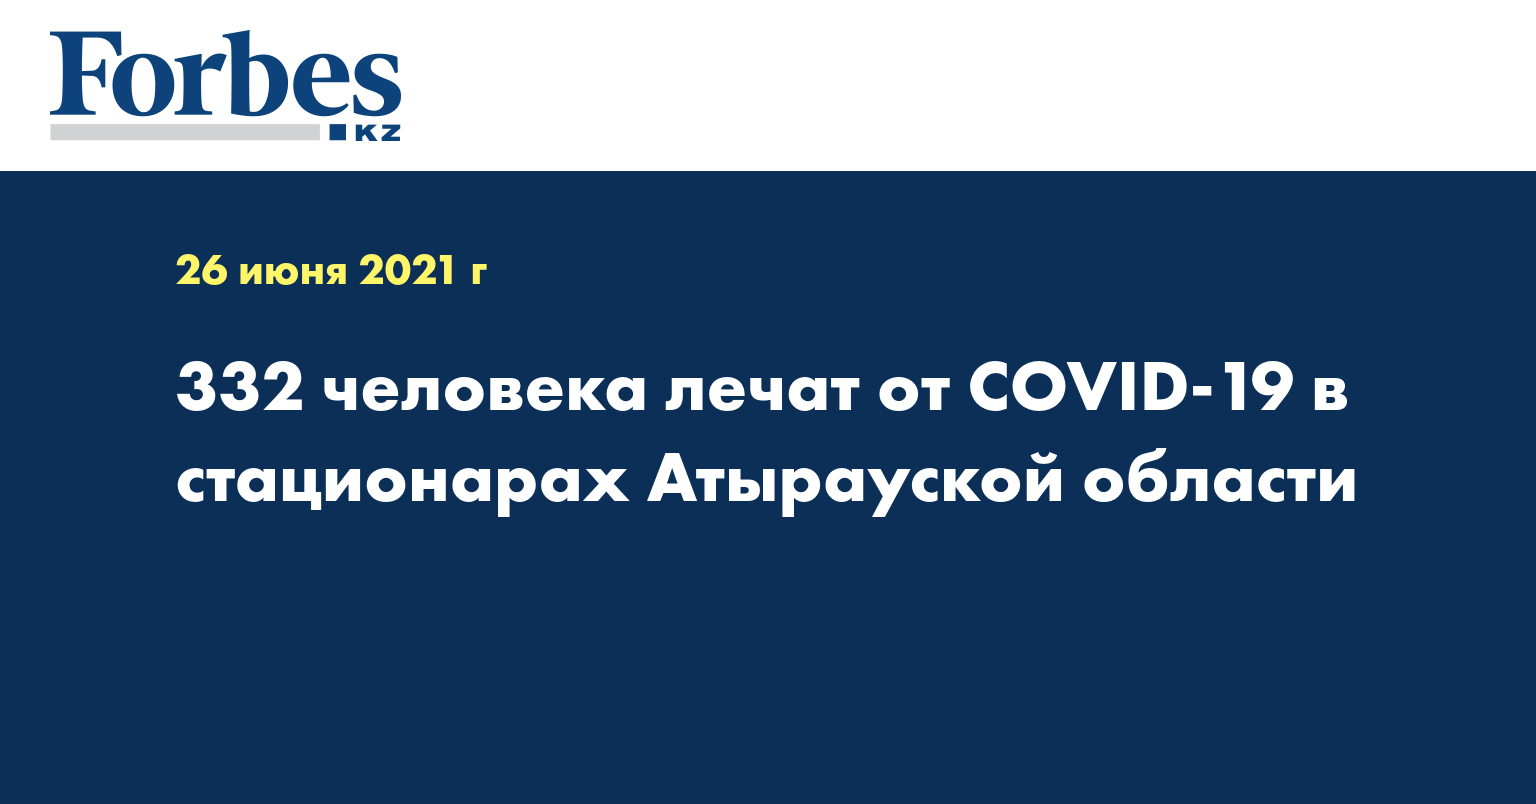 332 человека лечат от COVID-19 в стационарах Атырауской области